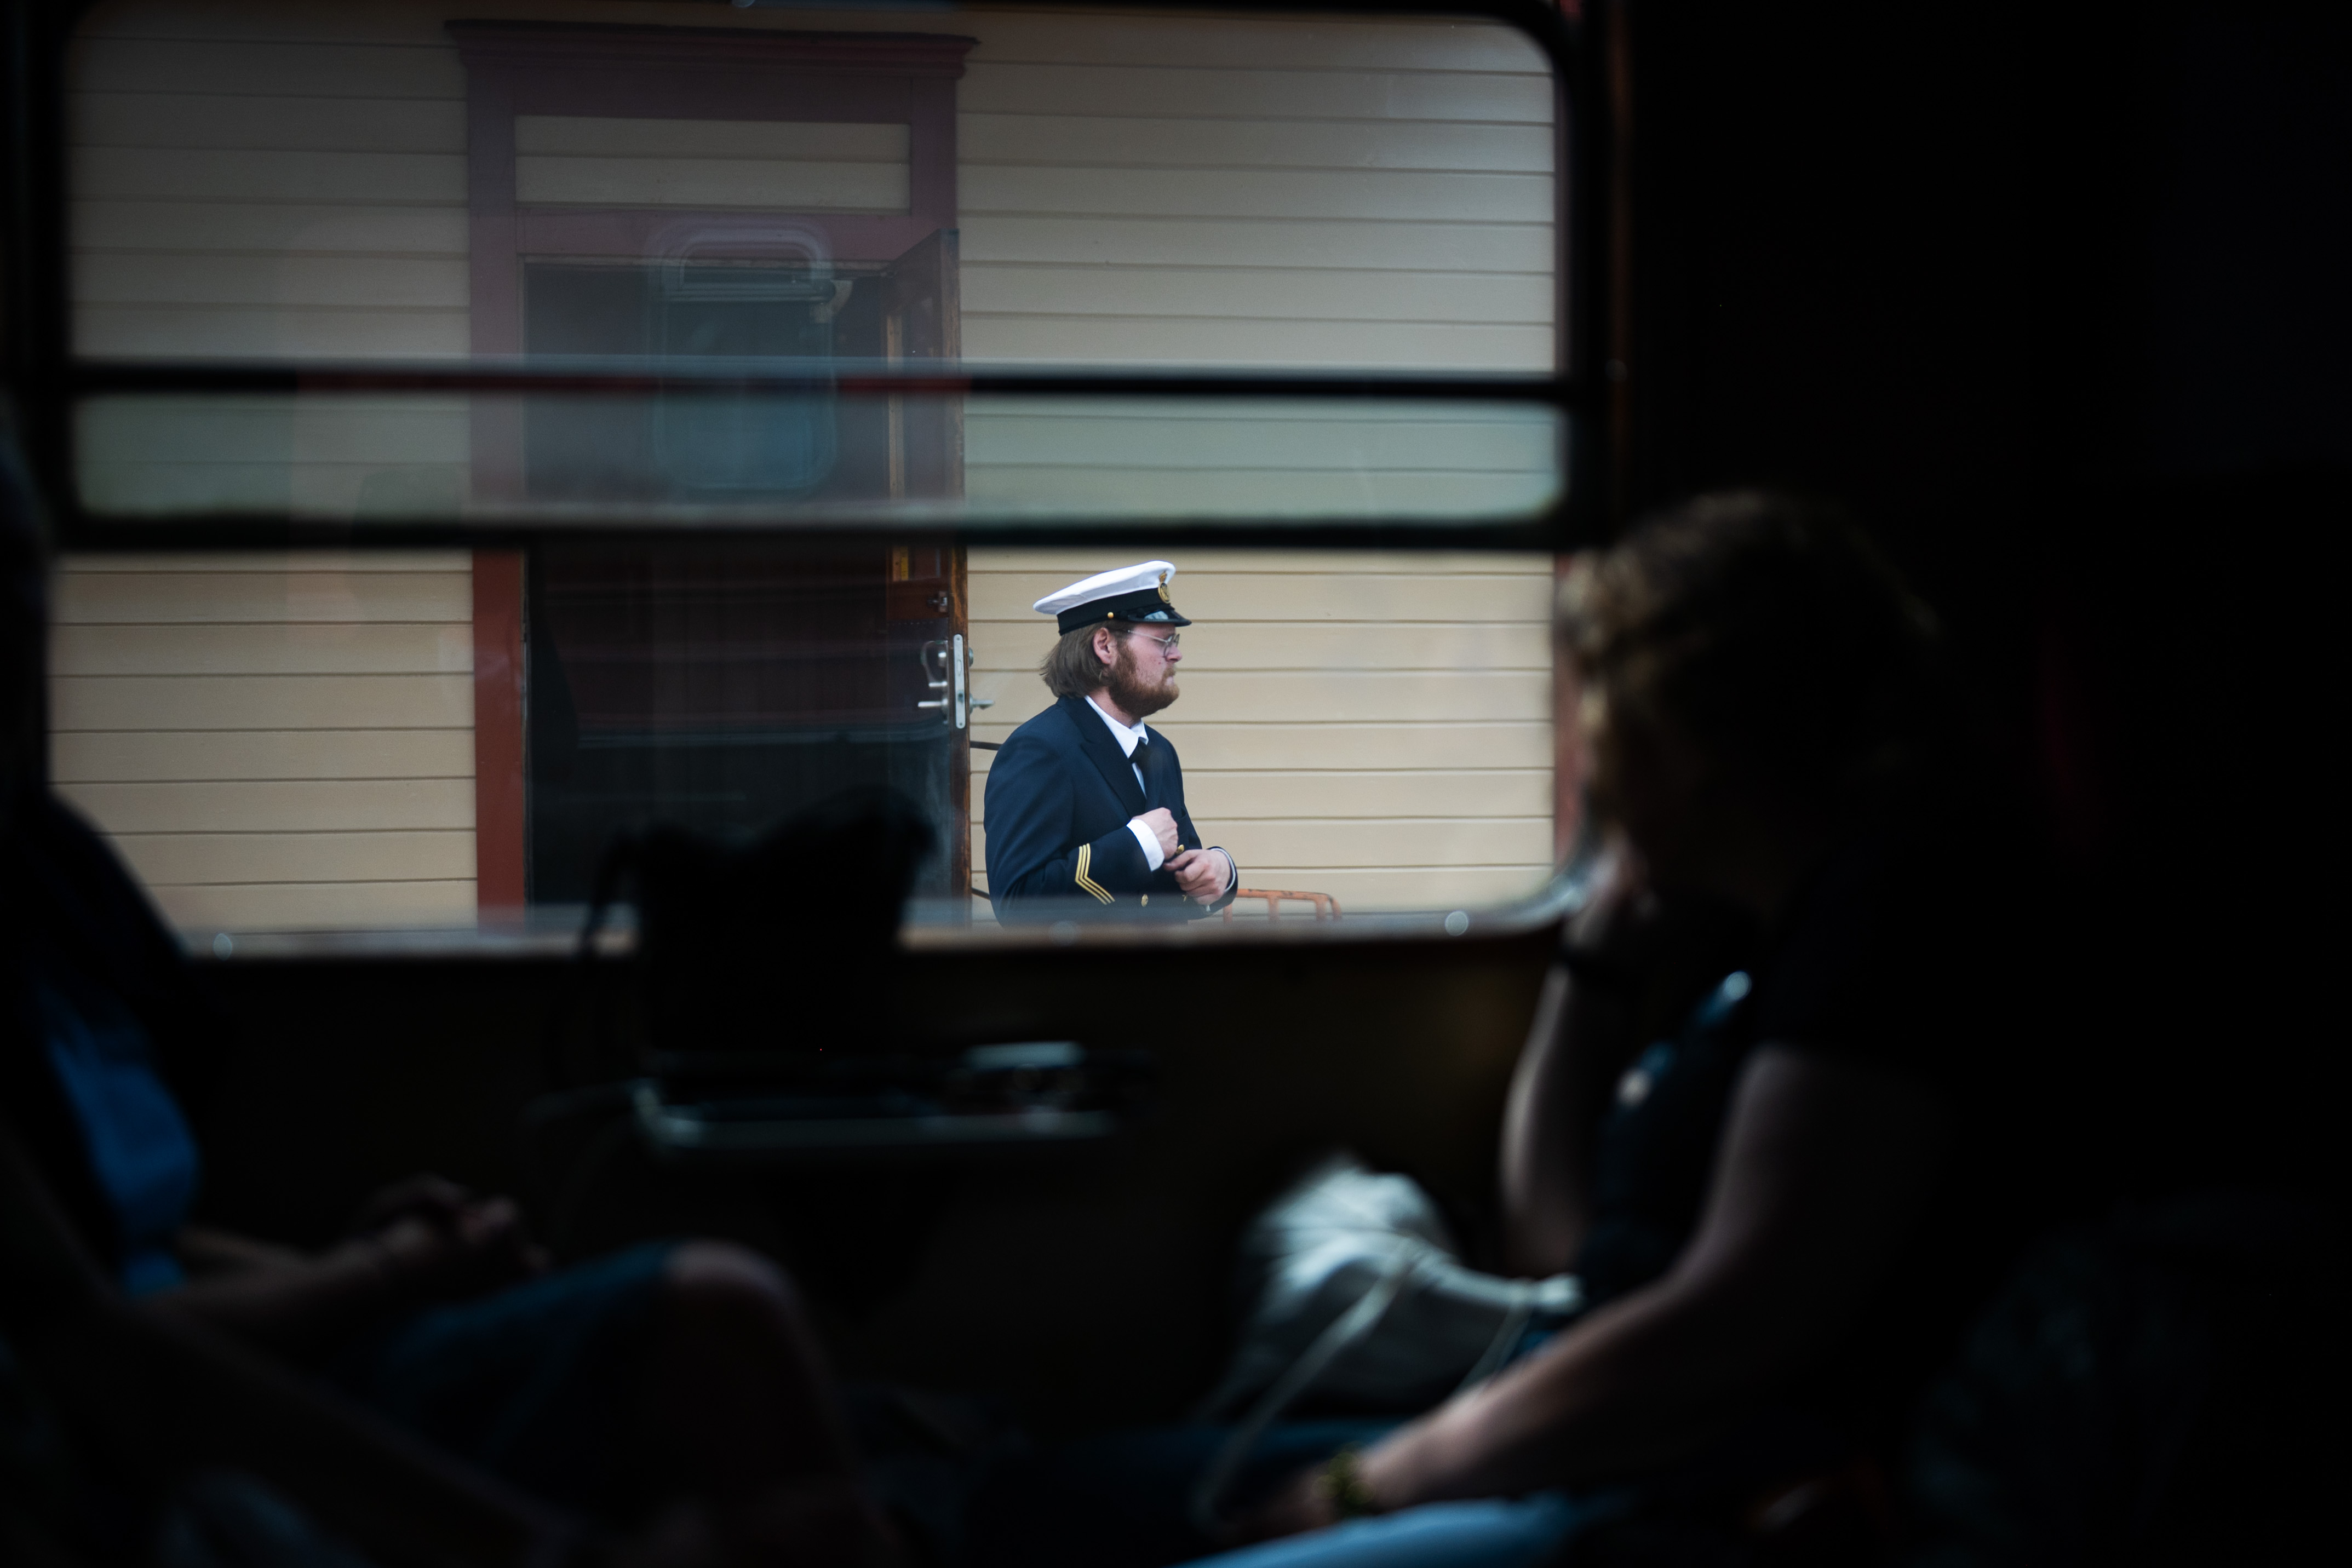 Bilden är tagen i en tågvagn, genom ett stort tågfönster syns en man i uniform på perrongen.